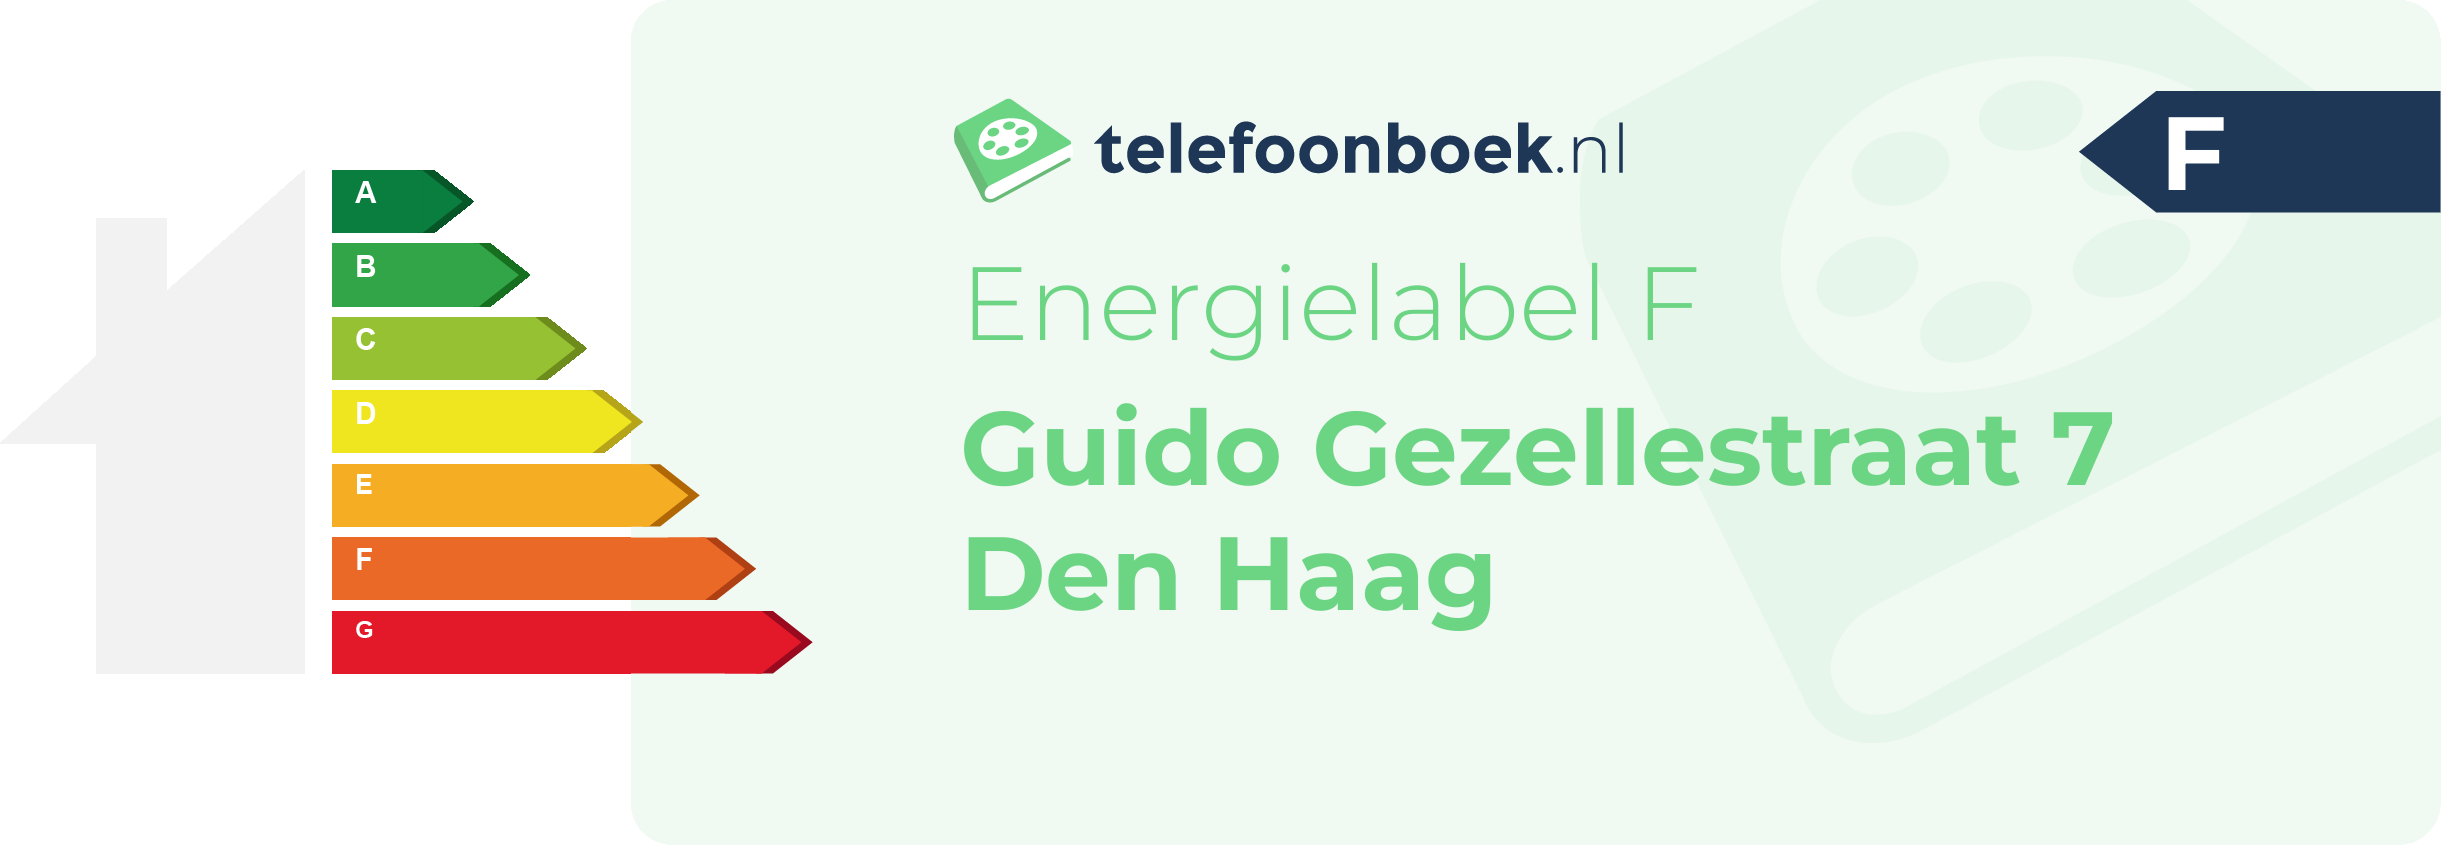 Energielabel Guido Gezellestraat 7 Den Haag